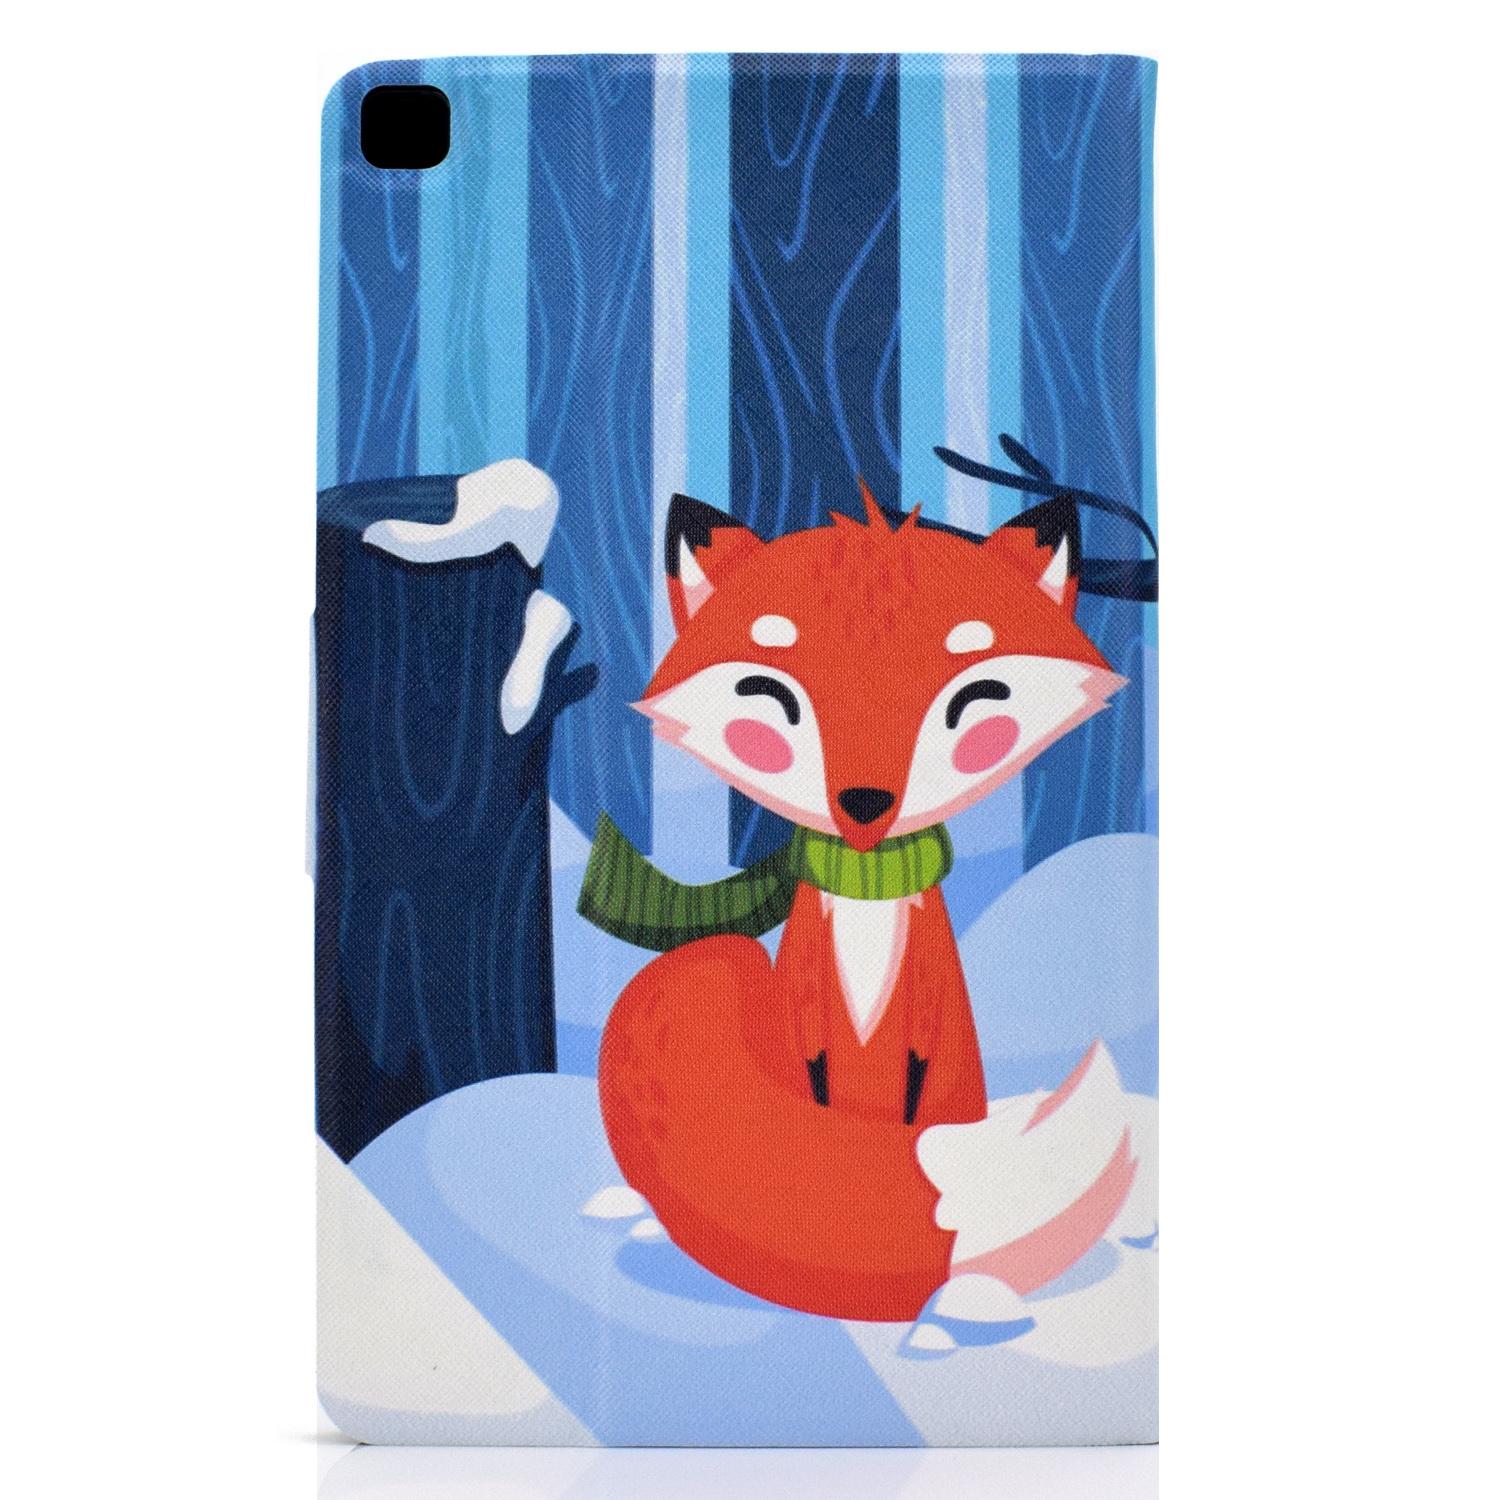 Изображение товара: Чехол с откидной крышкой для Samsung Galaxy Tab A7 10,4 2020 T500 T505 с изображением белой совы и красной лисы панды